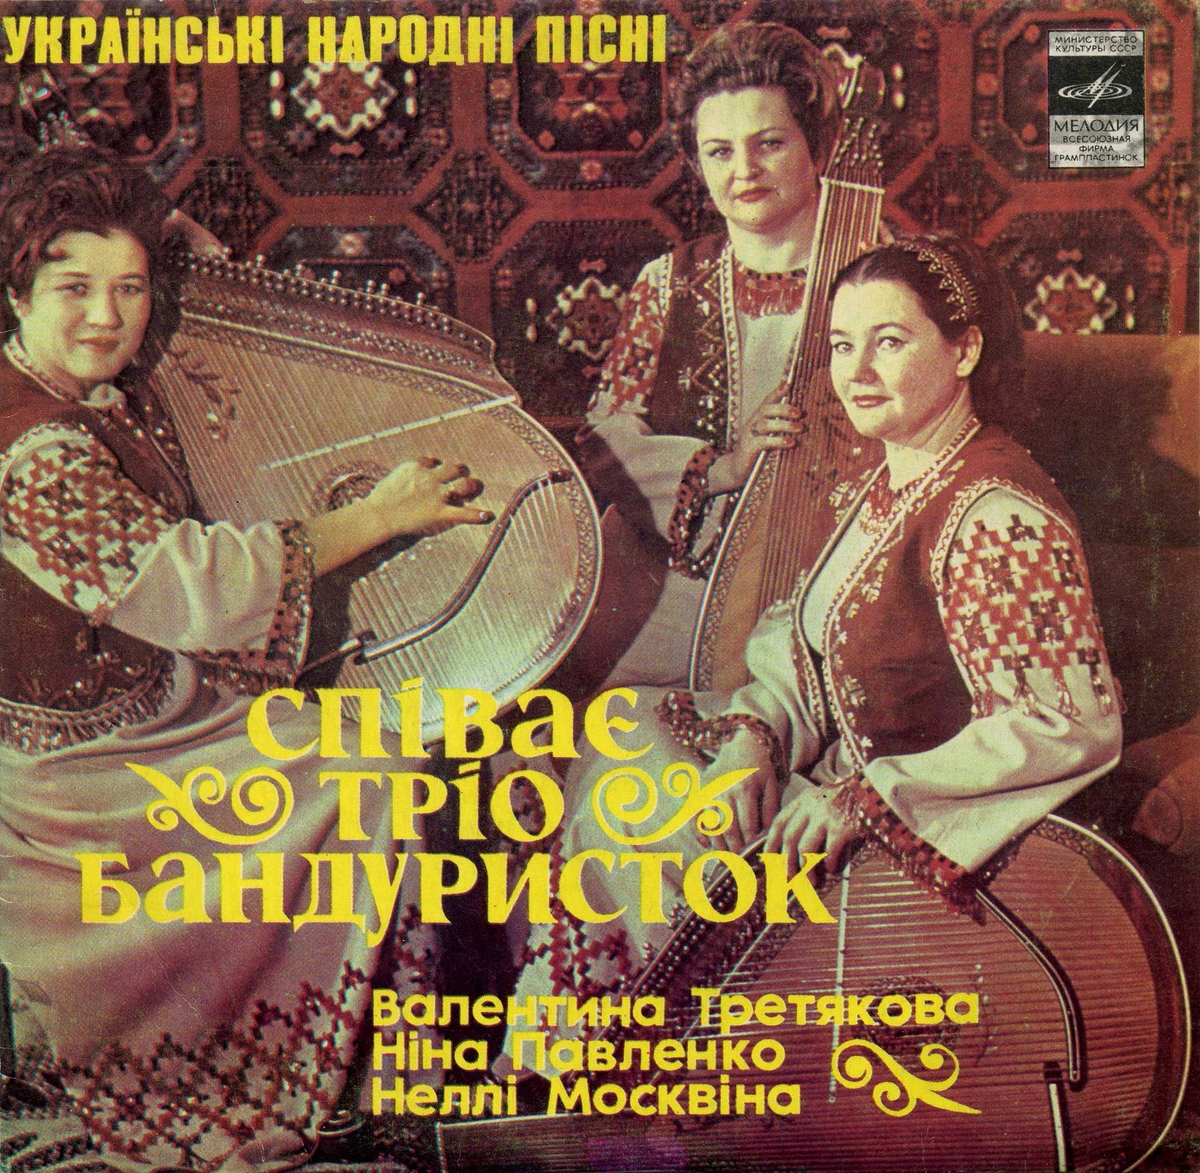 ТРИО БАНДУРИСТОК. Украинские народные песни